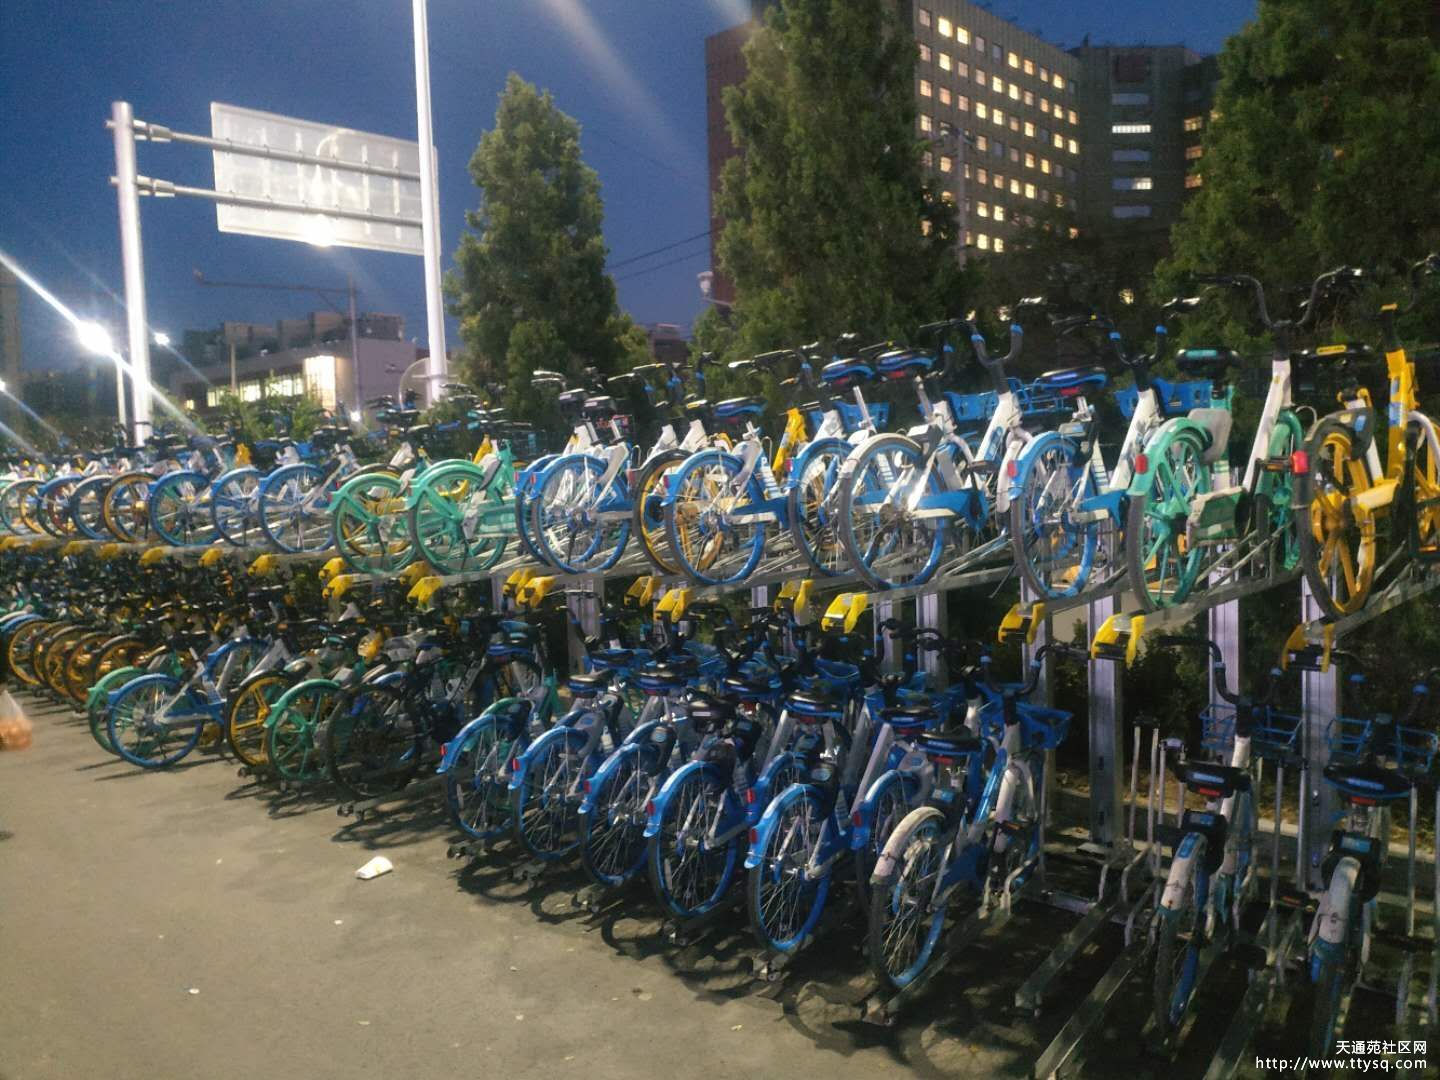 天通苑地铁站附近的共享单车秩序有点改进了